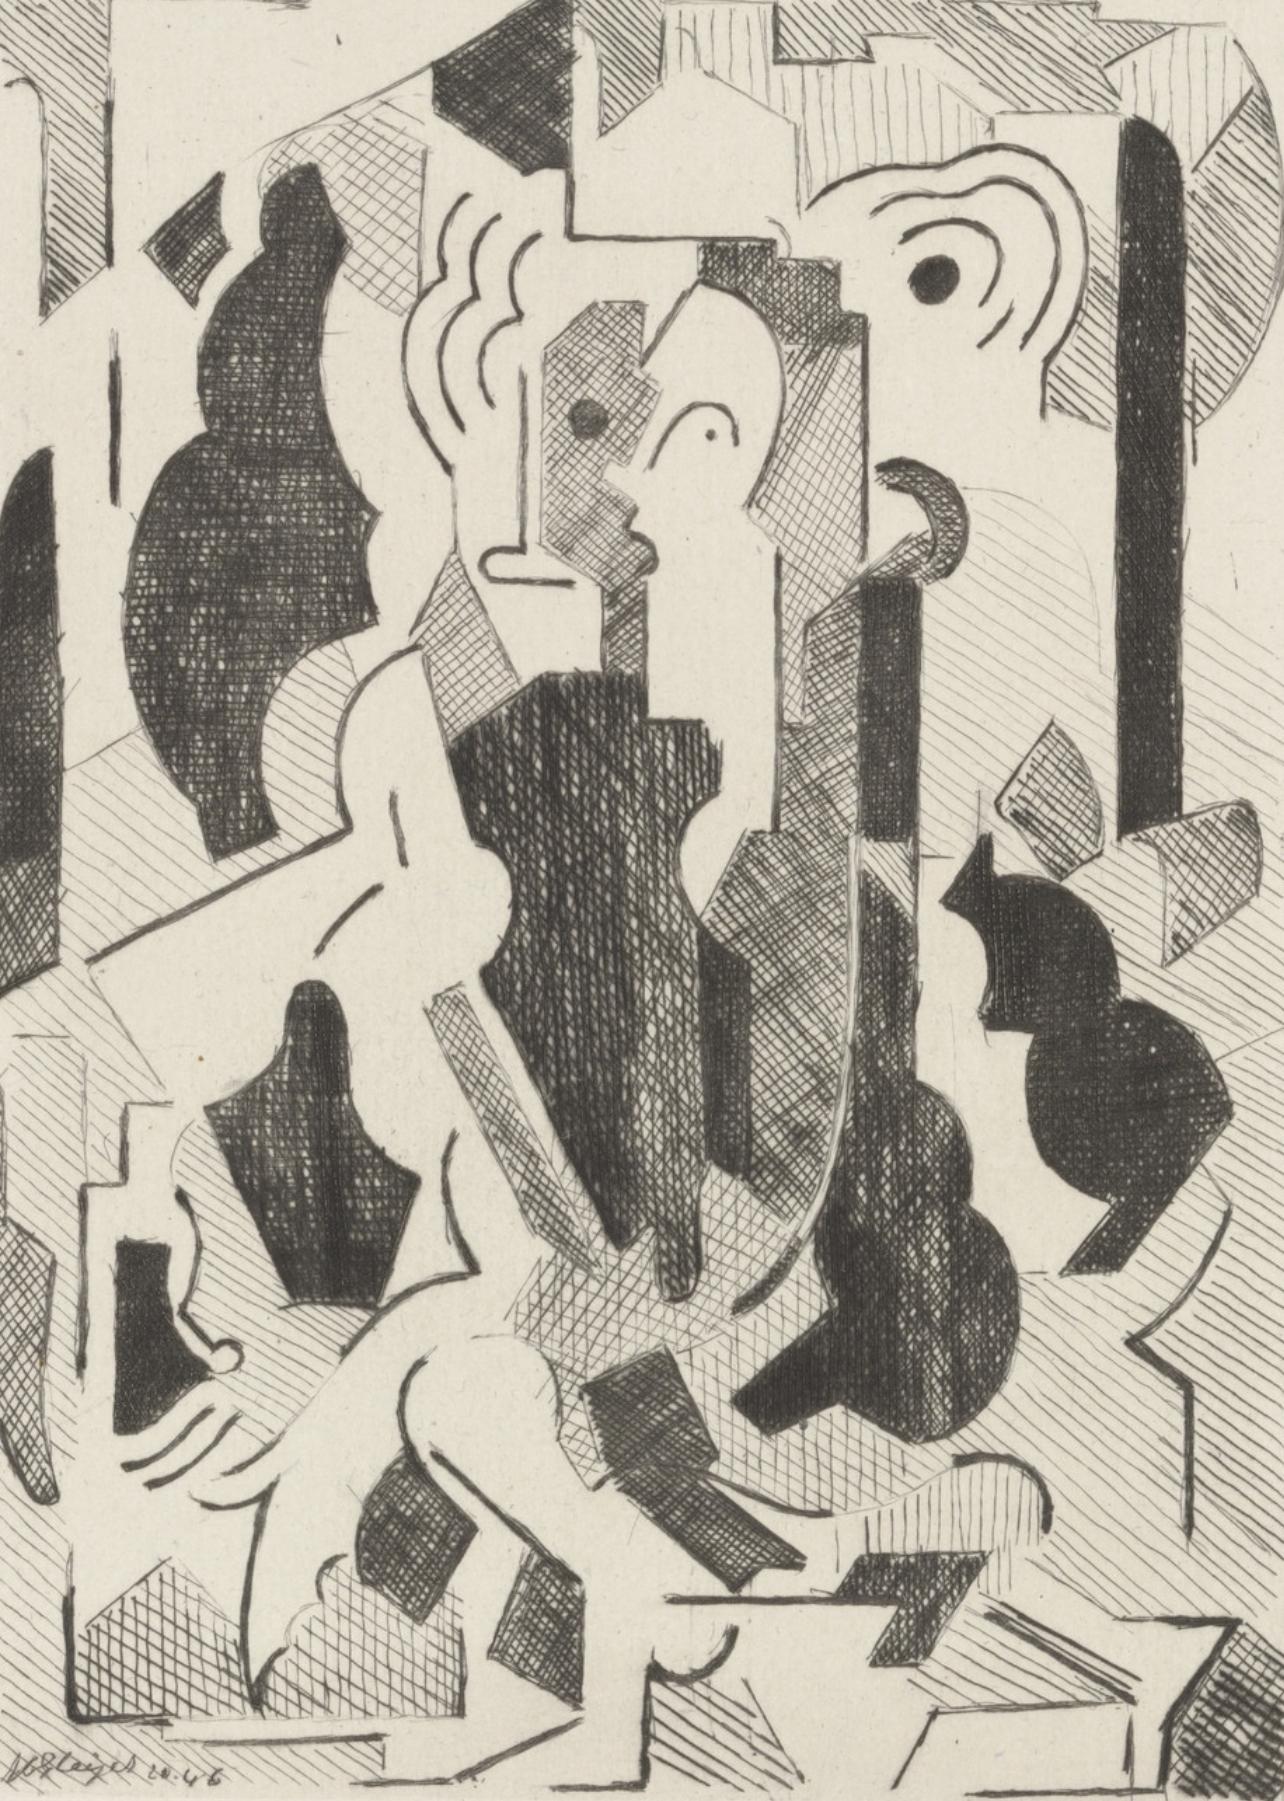 Gleizes, Composition, Du cubisme (after)